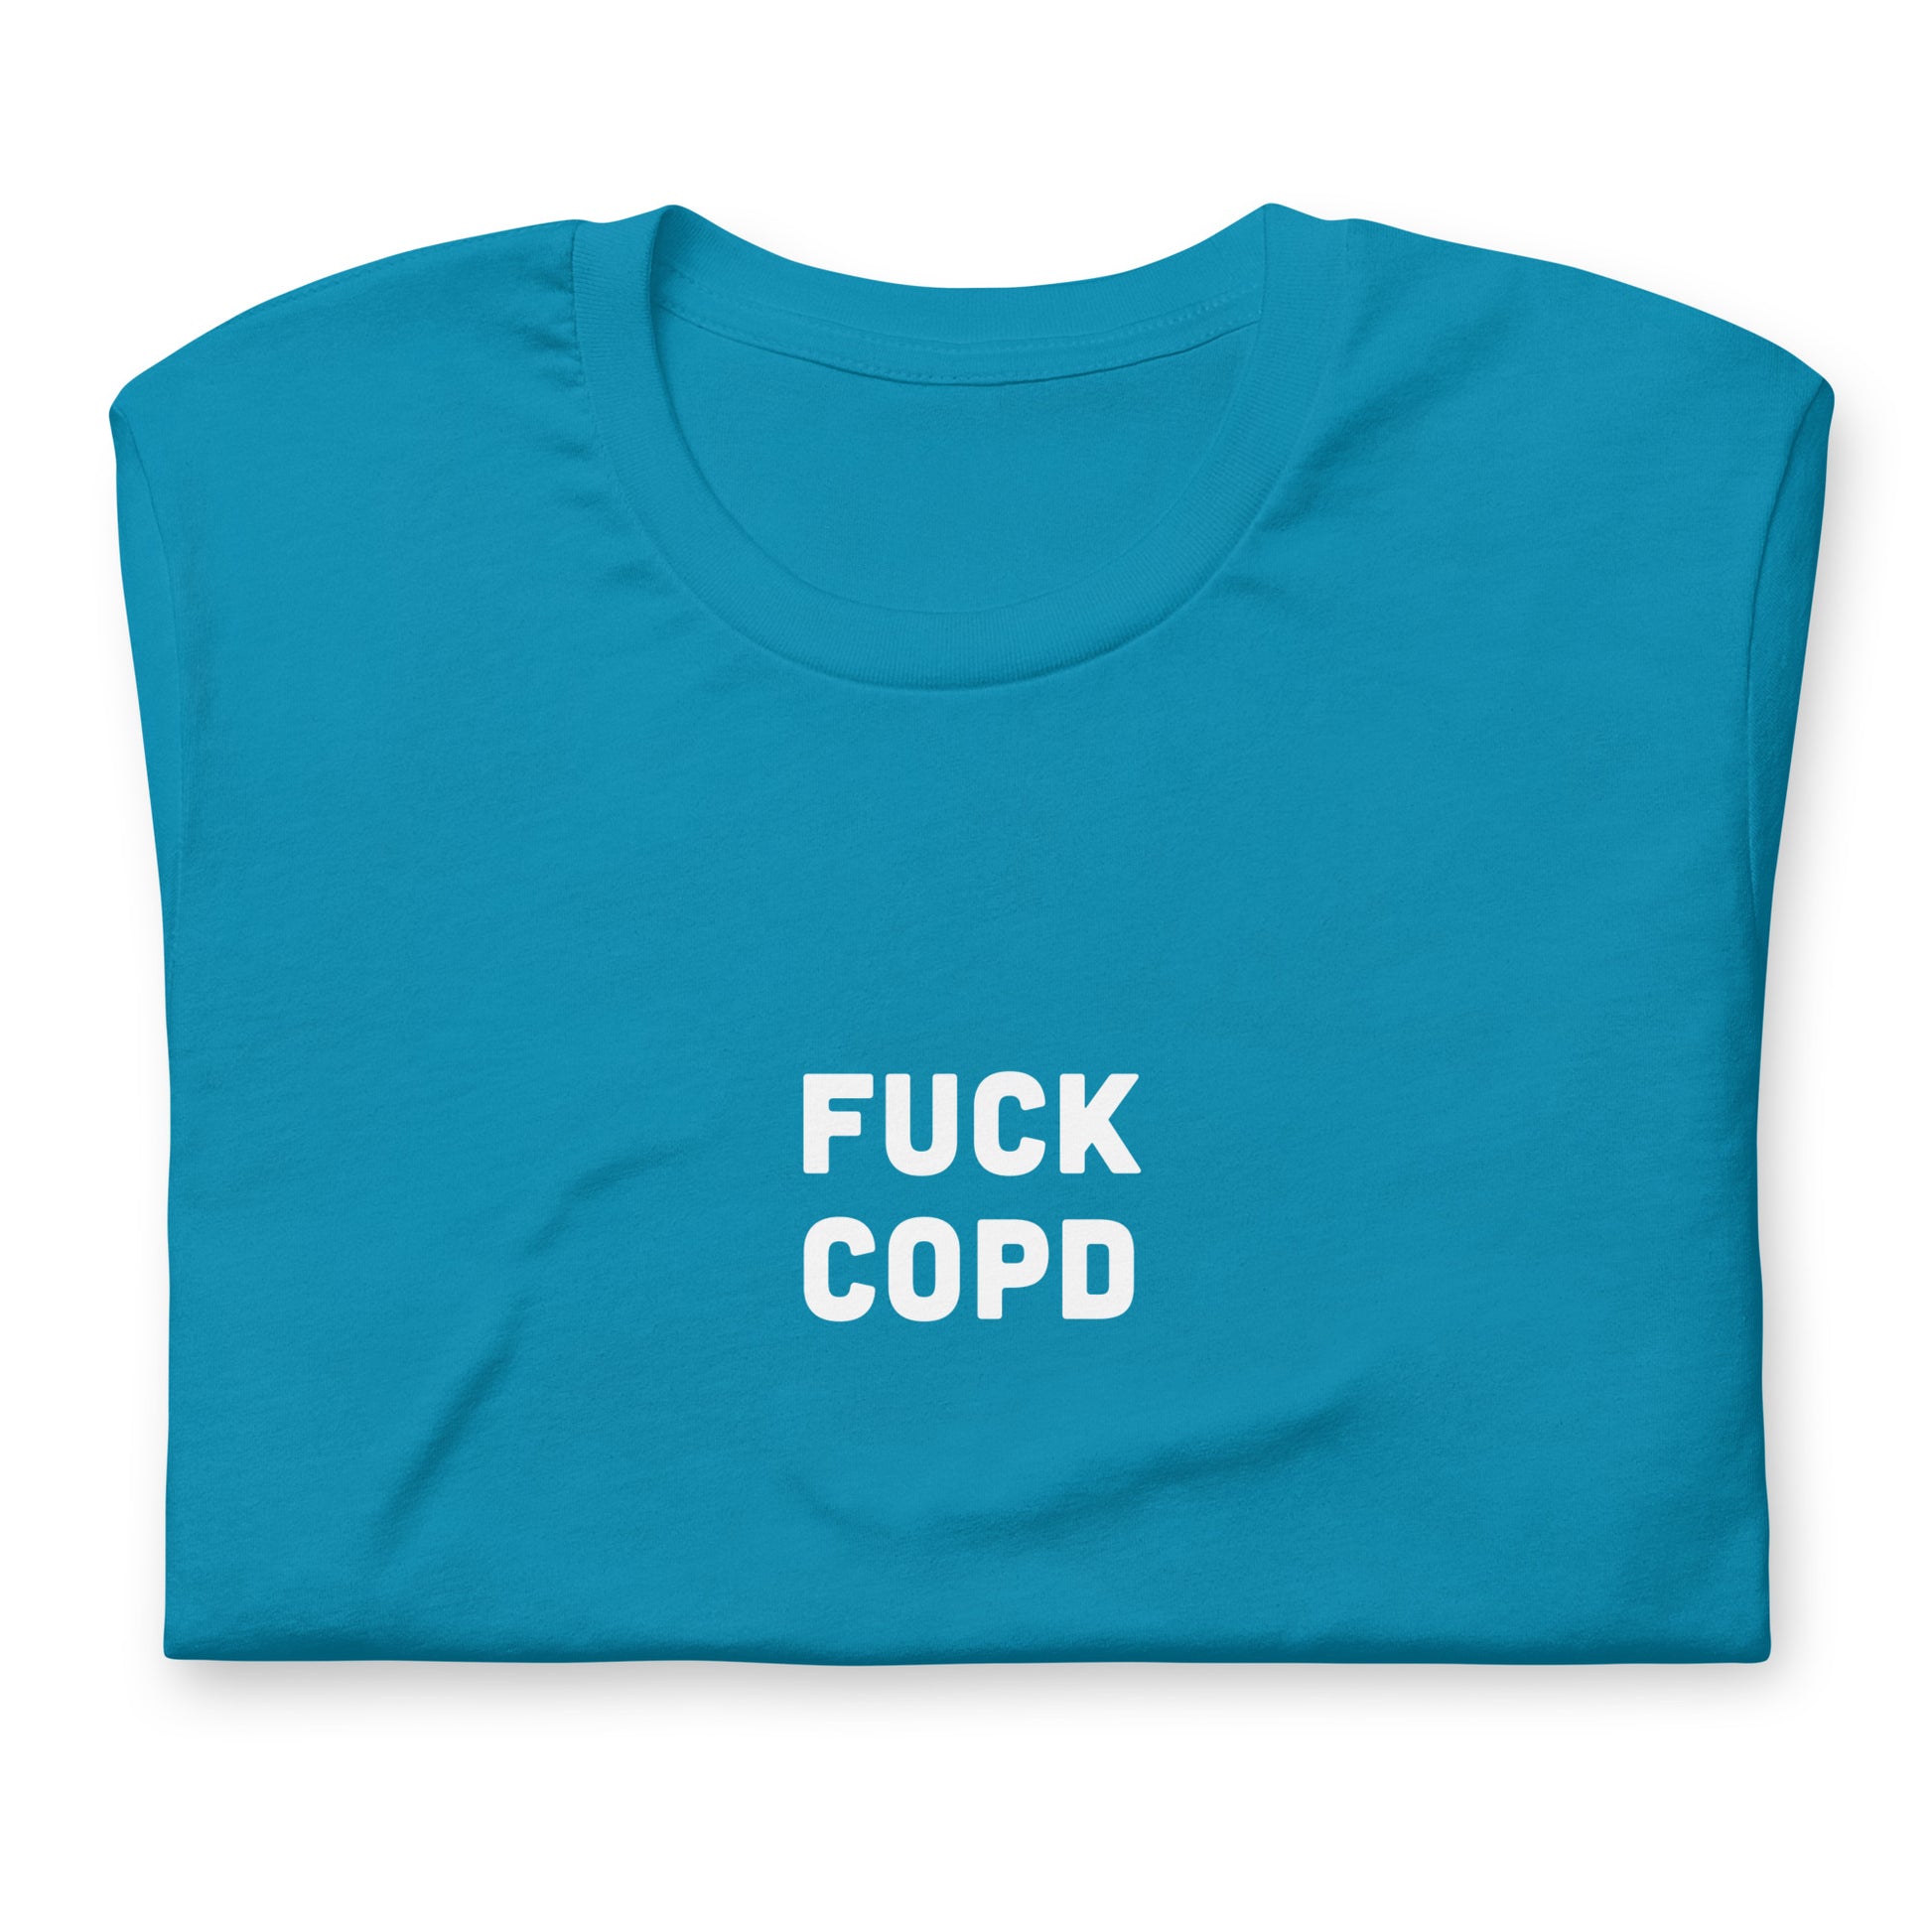 Fuck Copd T-Shirt Size M Color Navy